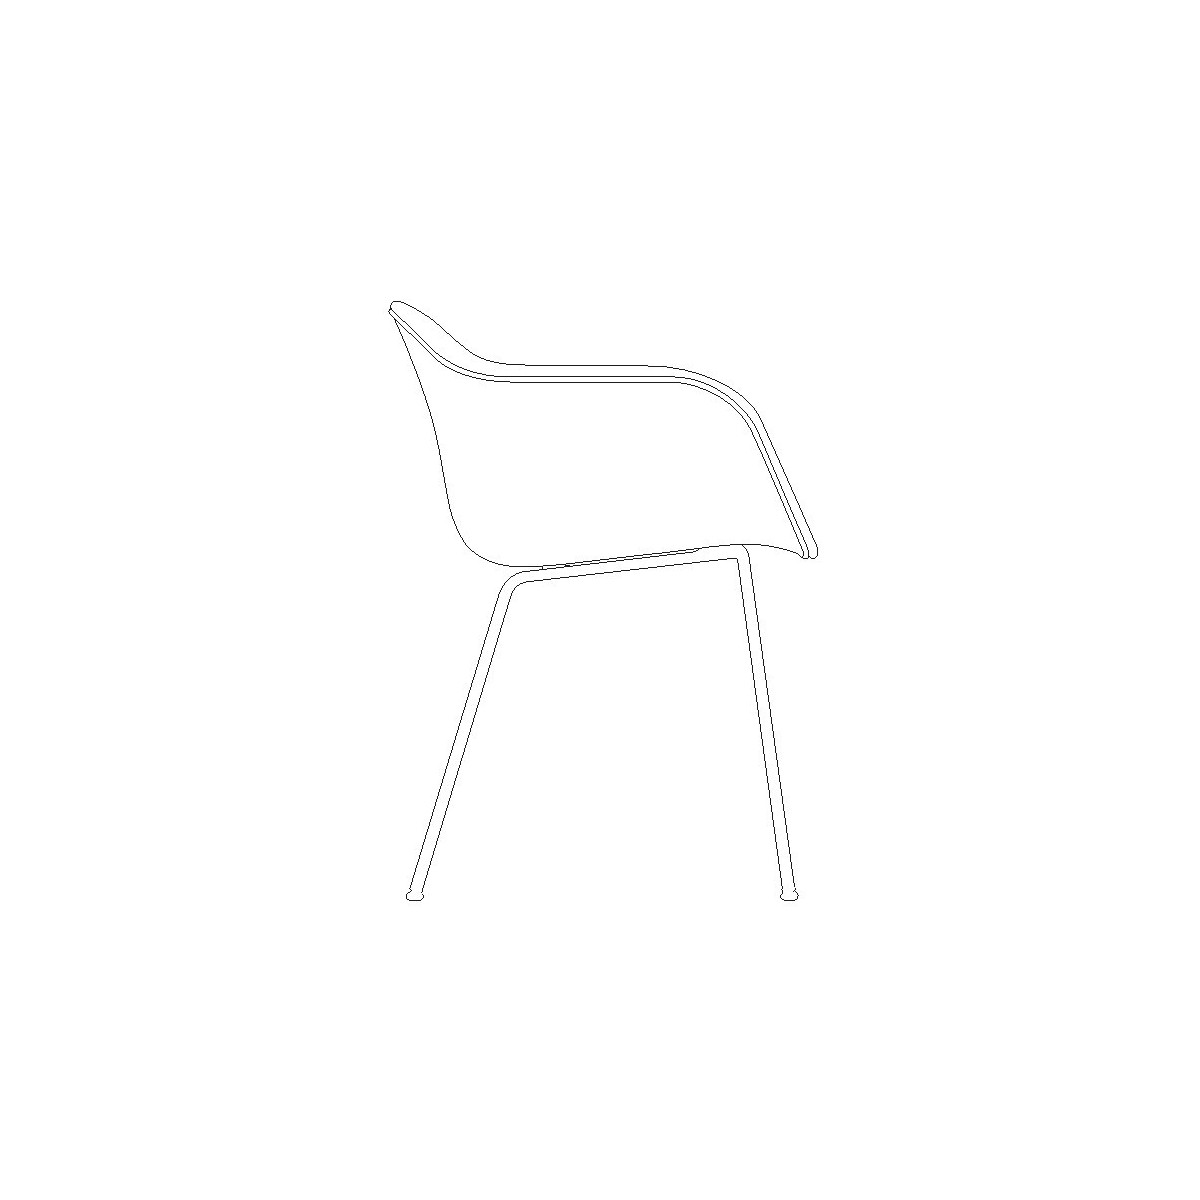 full upholstery - Fiber chair tube base with armrests